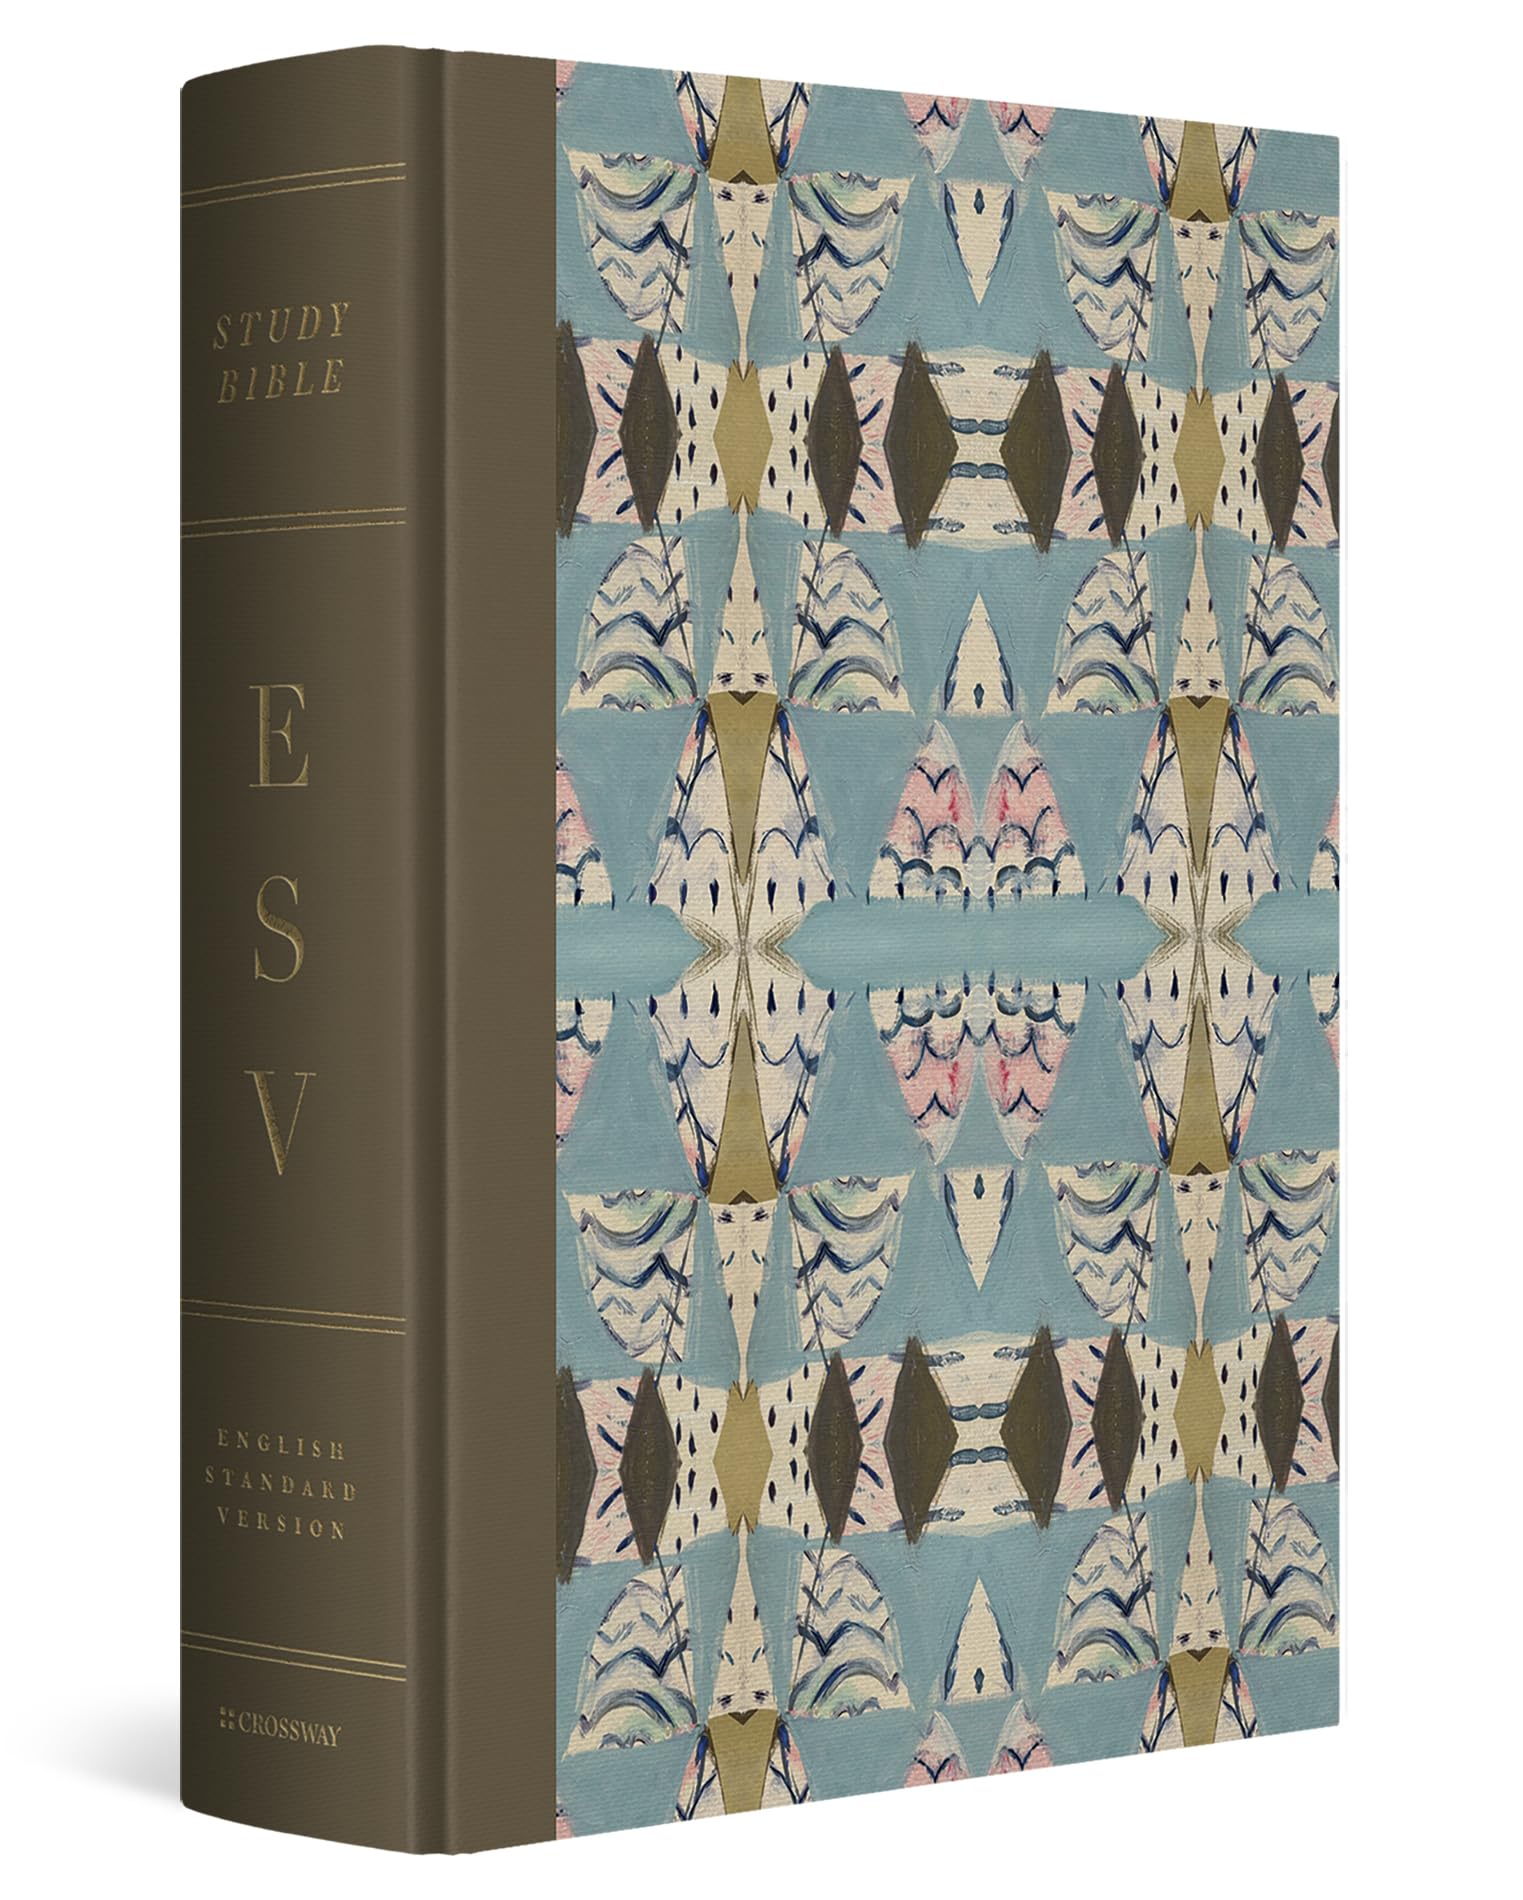 ESV Study Bible, Artist Series (Cloth over Board, Jessica Dennis Bush, Interlude)